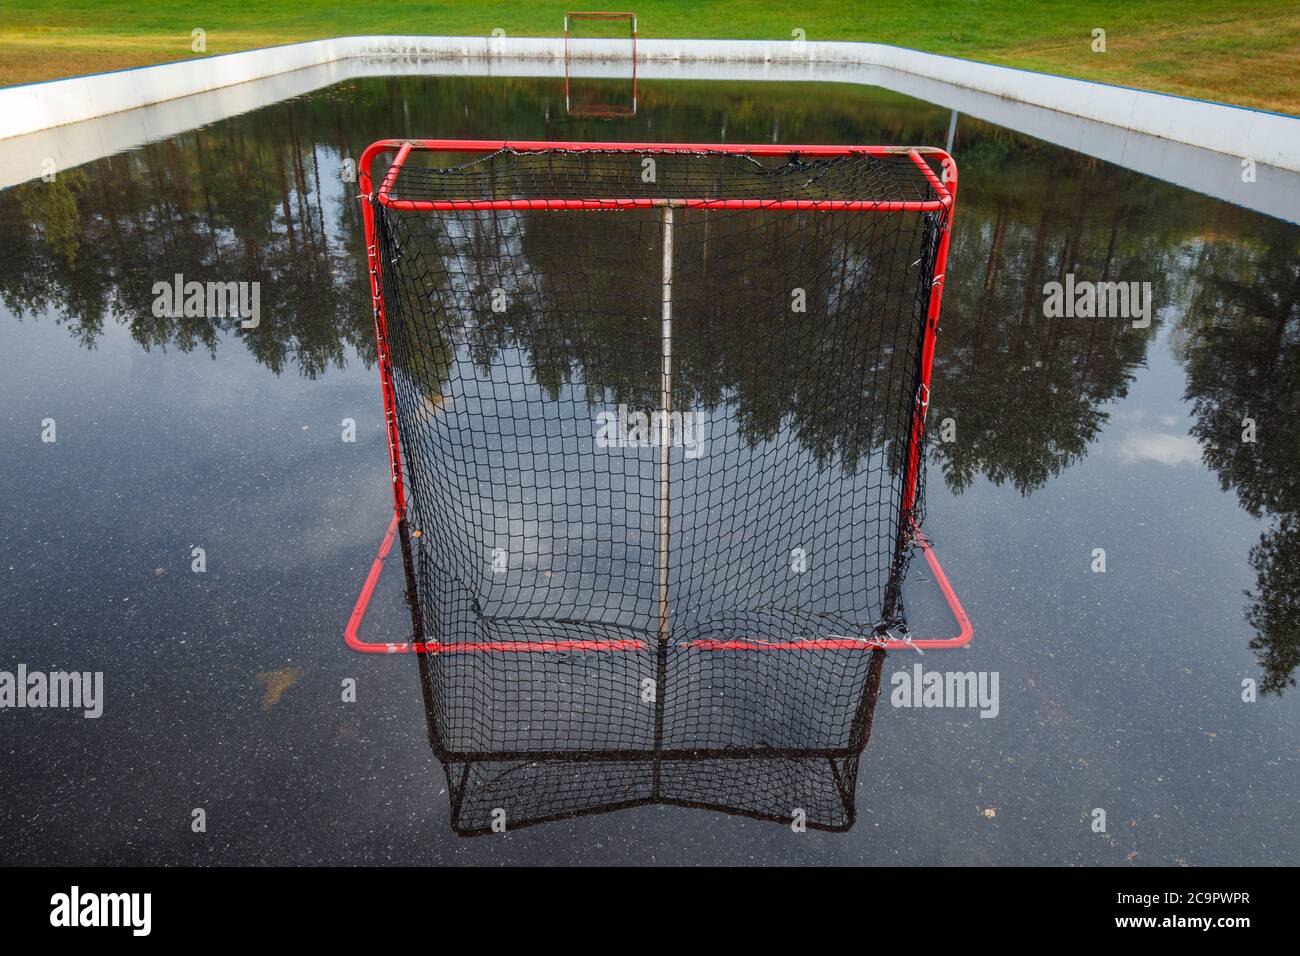 Unihockey Tor auf Wasser gefüllt Outdoor Unihockey Court, Finnland Stockfoto